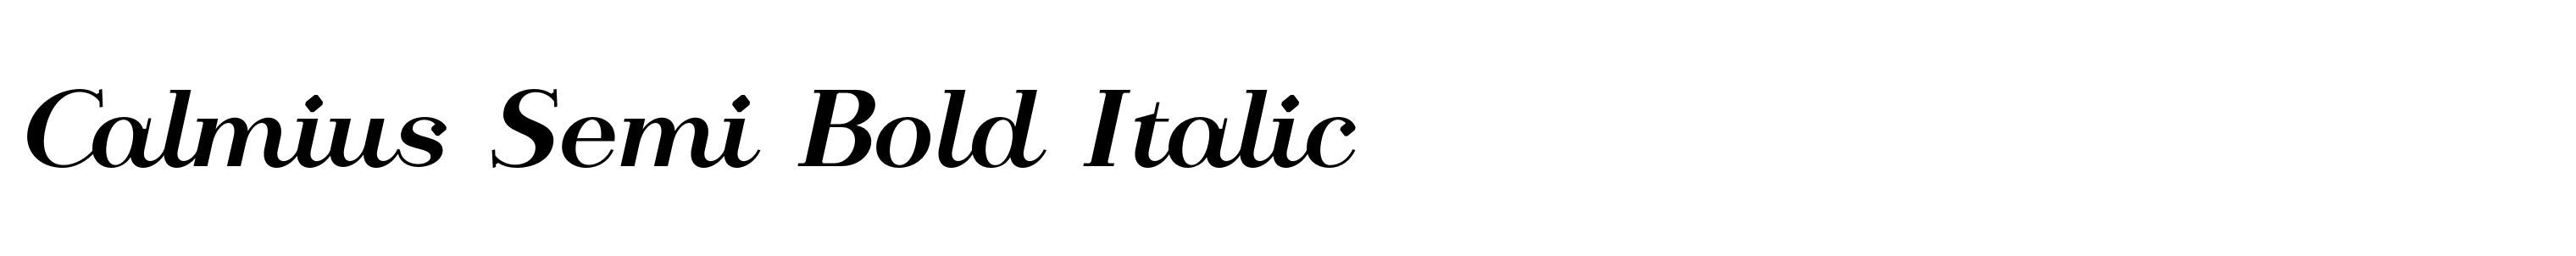 Calmius Semi Bold Italic